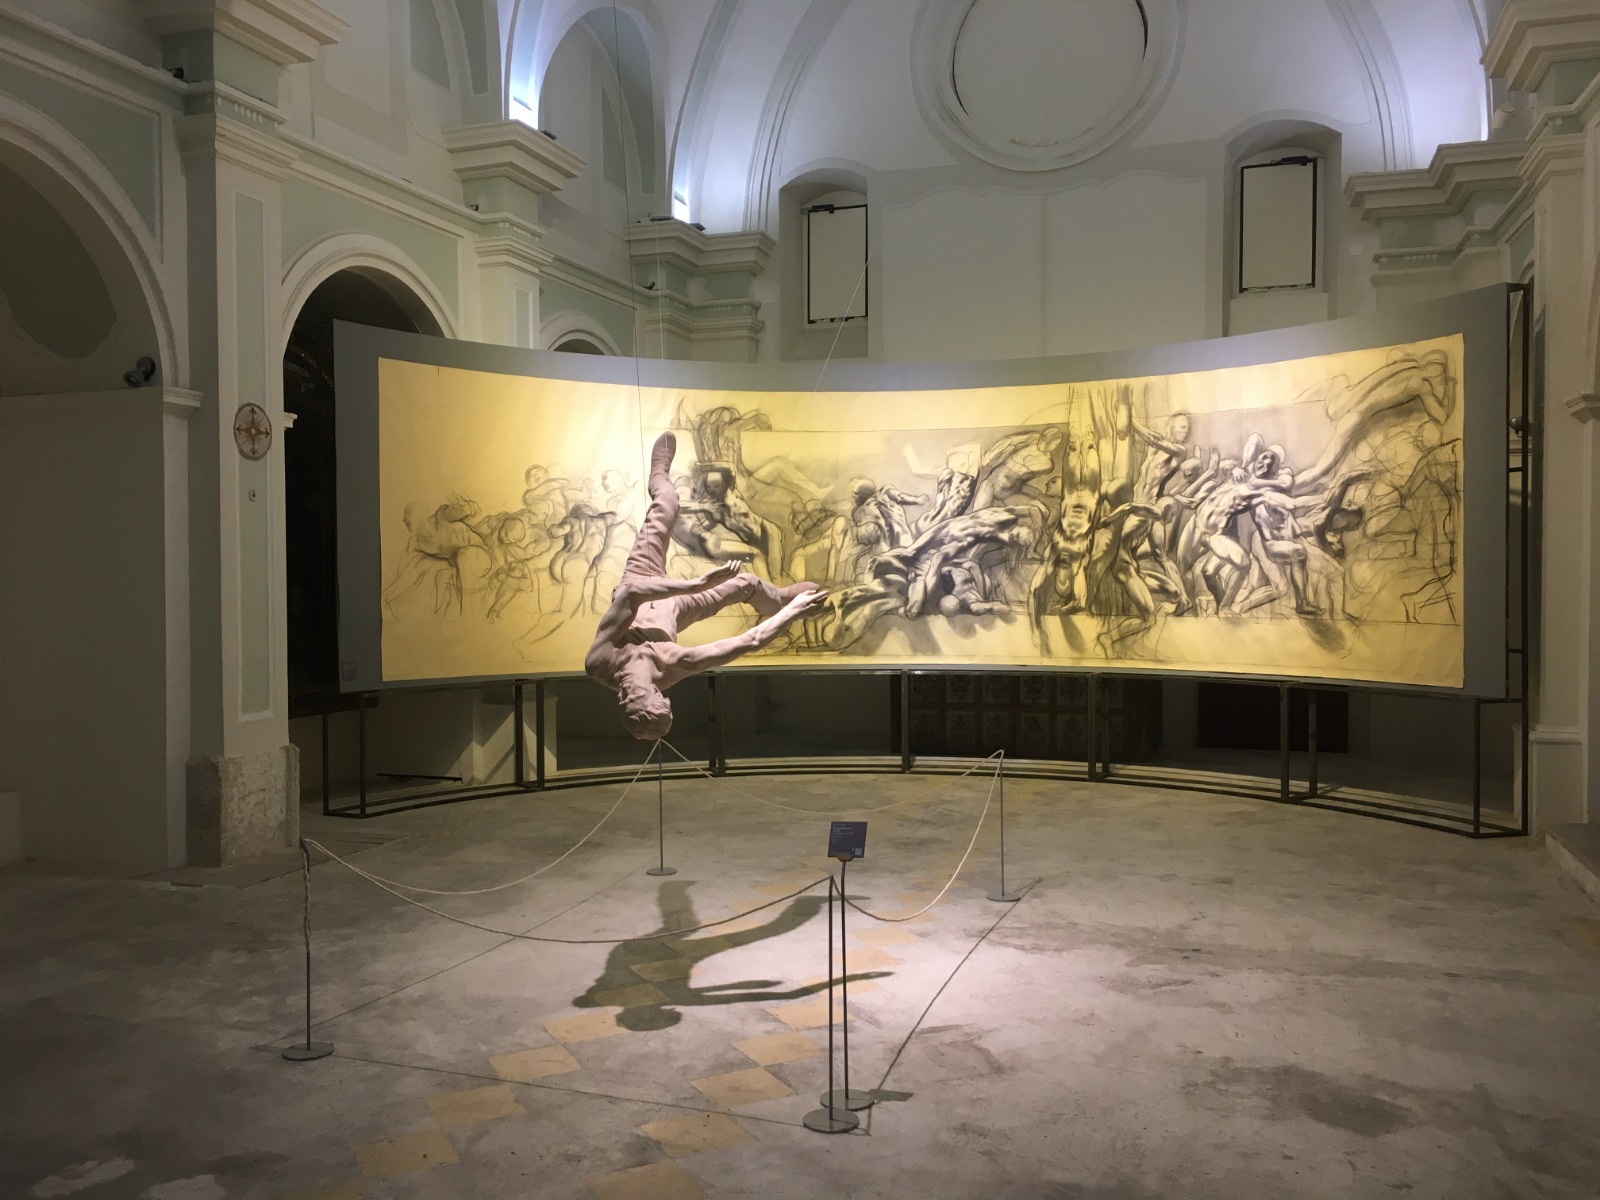 Matera, prorogata all’8 gennaio la mostra “Hostia. Pier Paolo Pasolini”. Oltre 10mila i visitatori fino a oggi